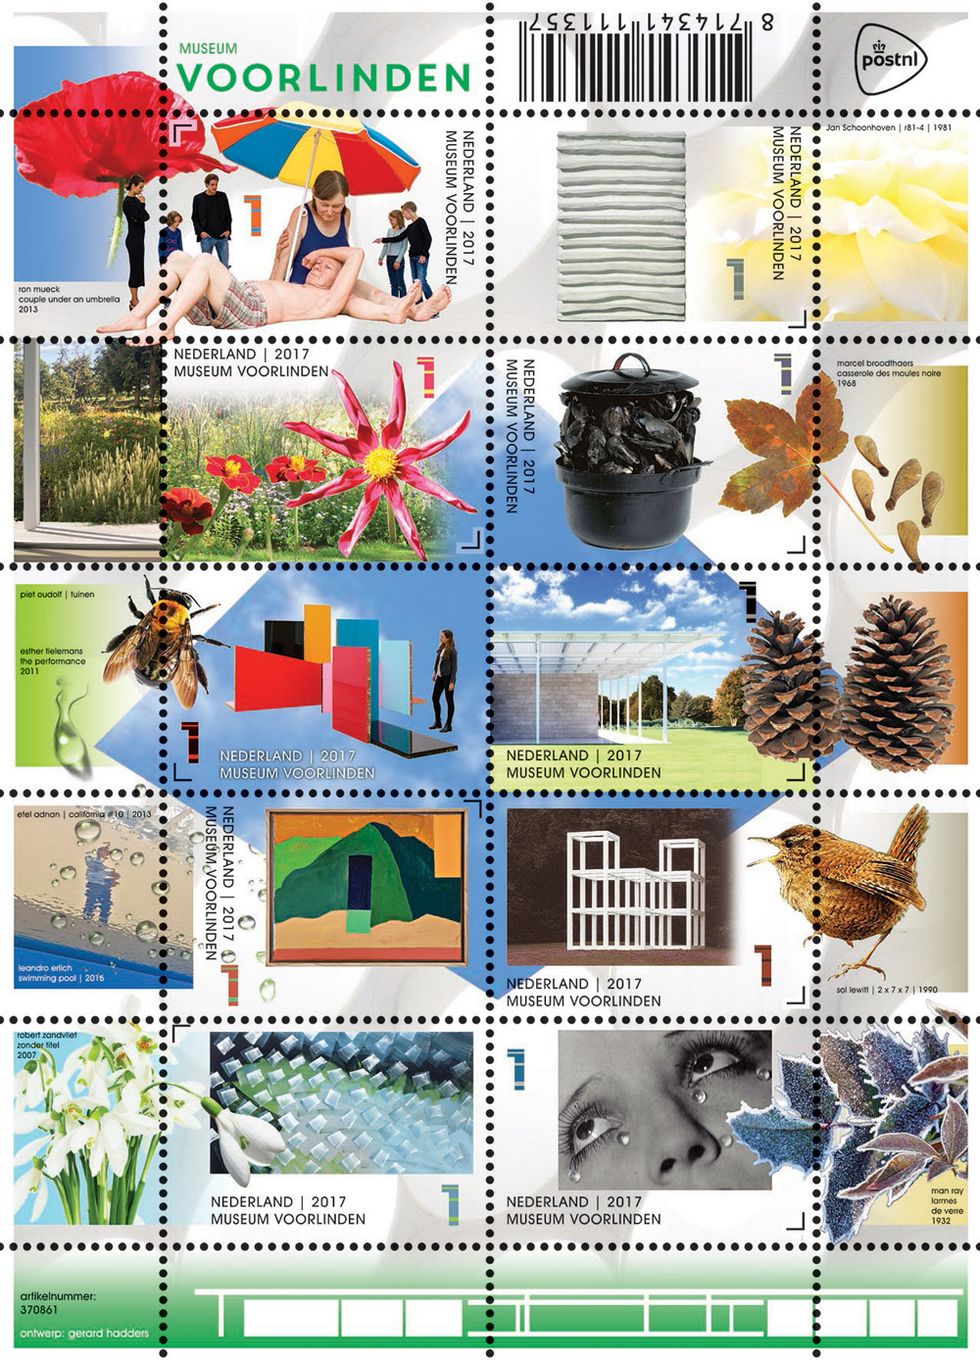 Postzegelvel Voorlinden - PostNL